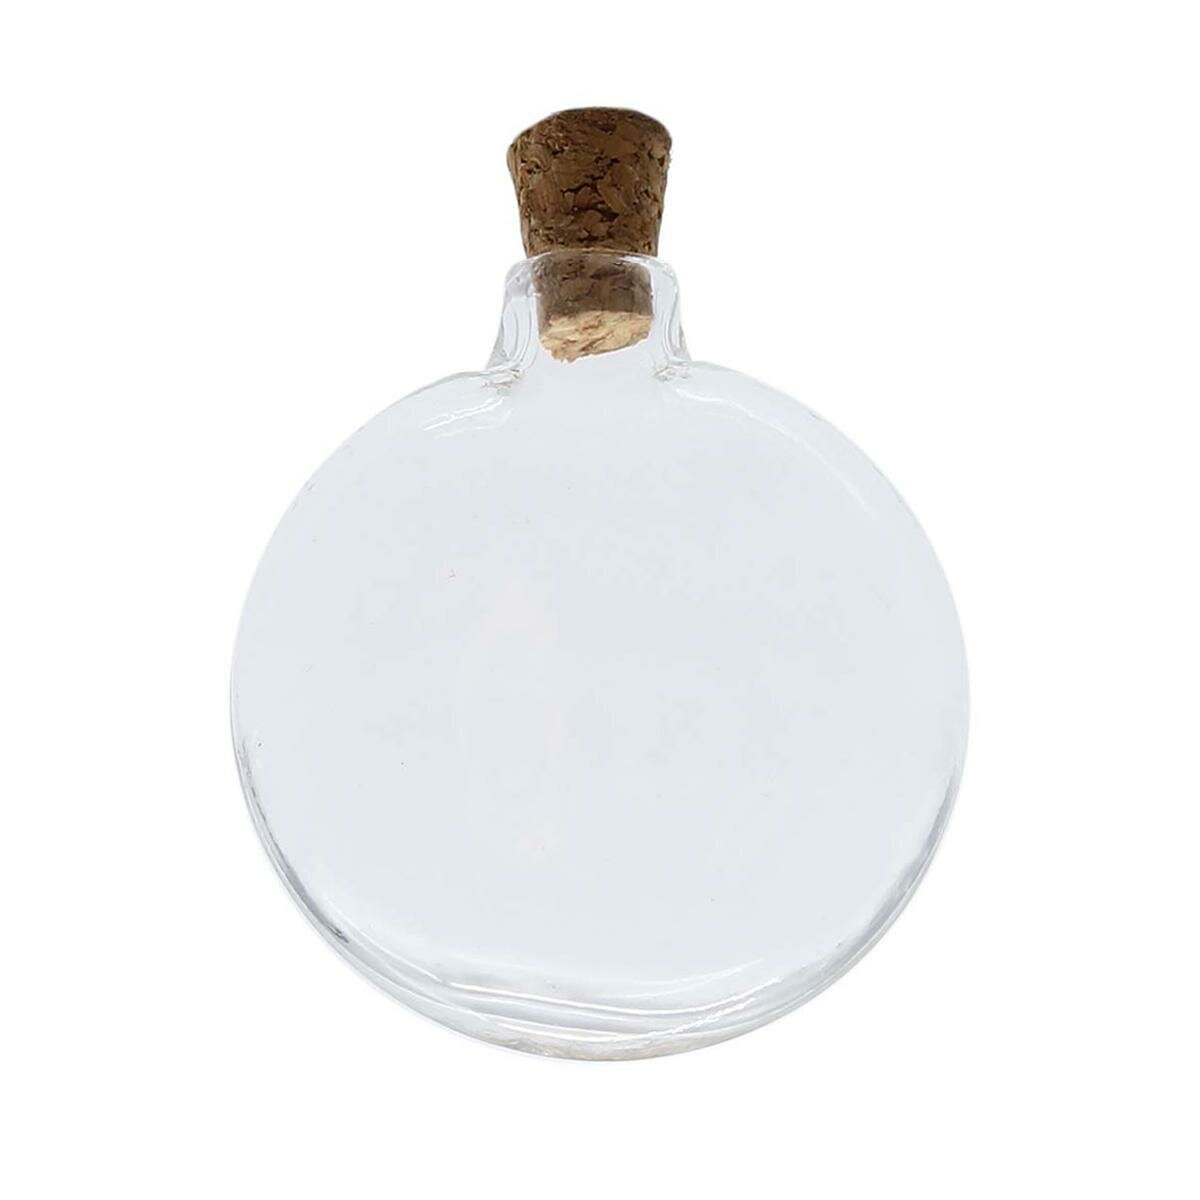 Декоративная бутылочка Astra&Craft круглая, плоская, с пробковой крышечкой, 3,8х3,8 см, 4 шт, стекло